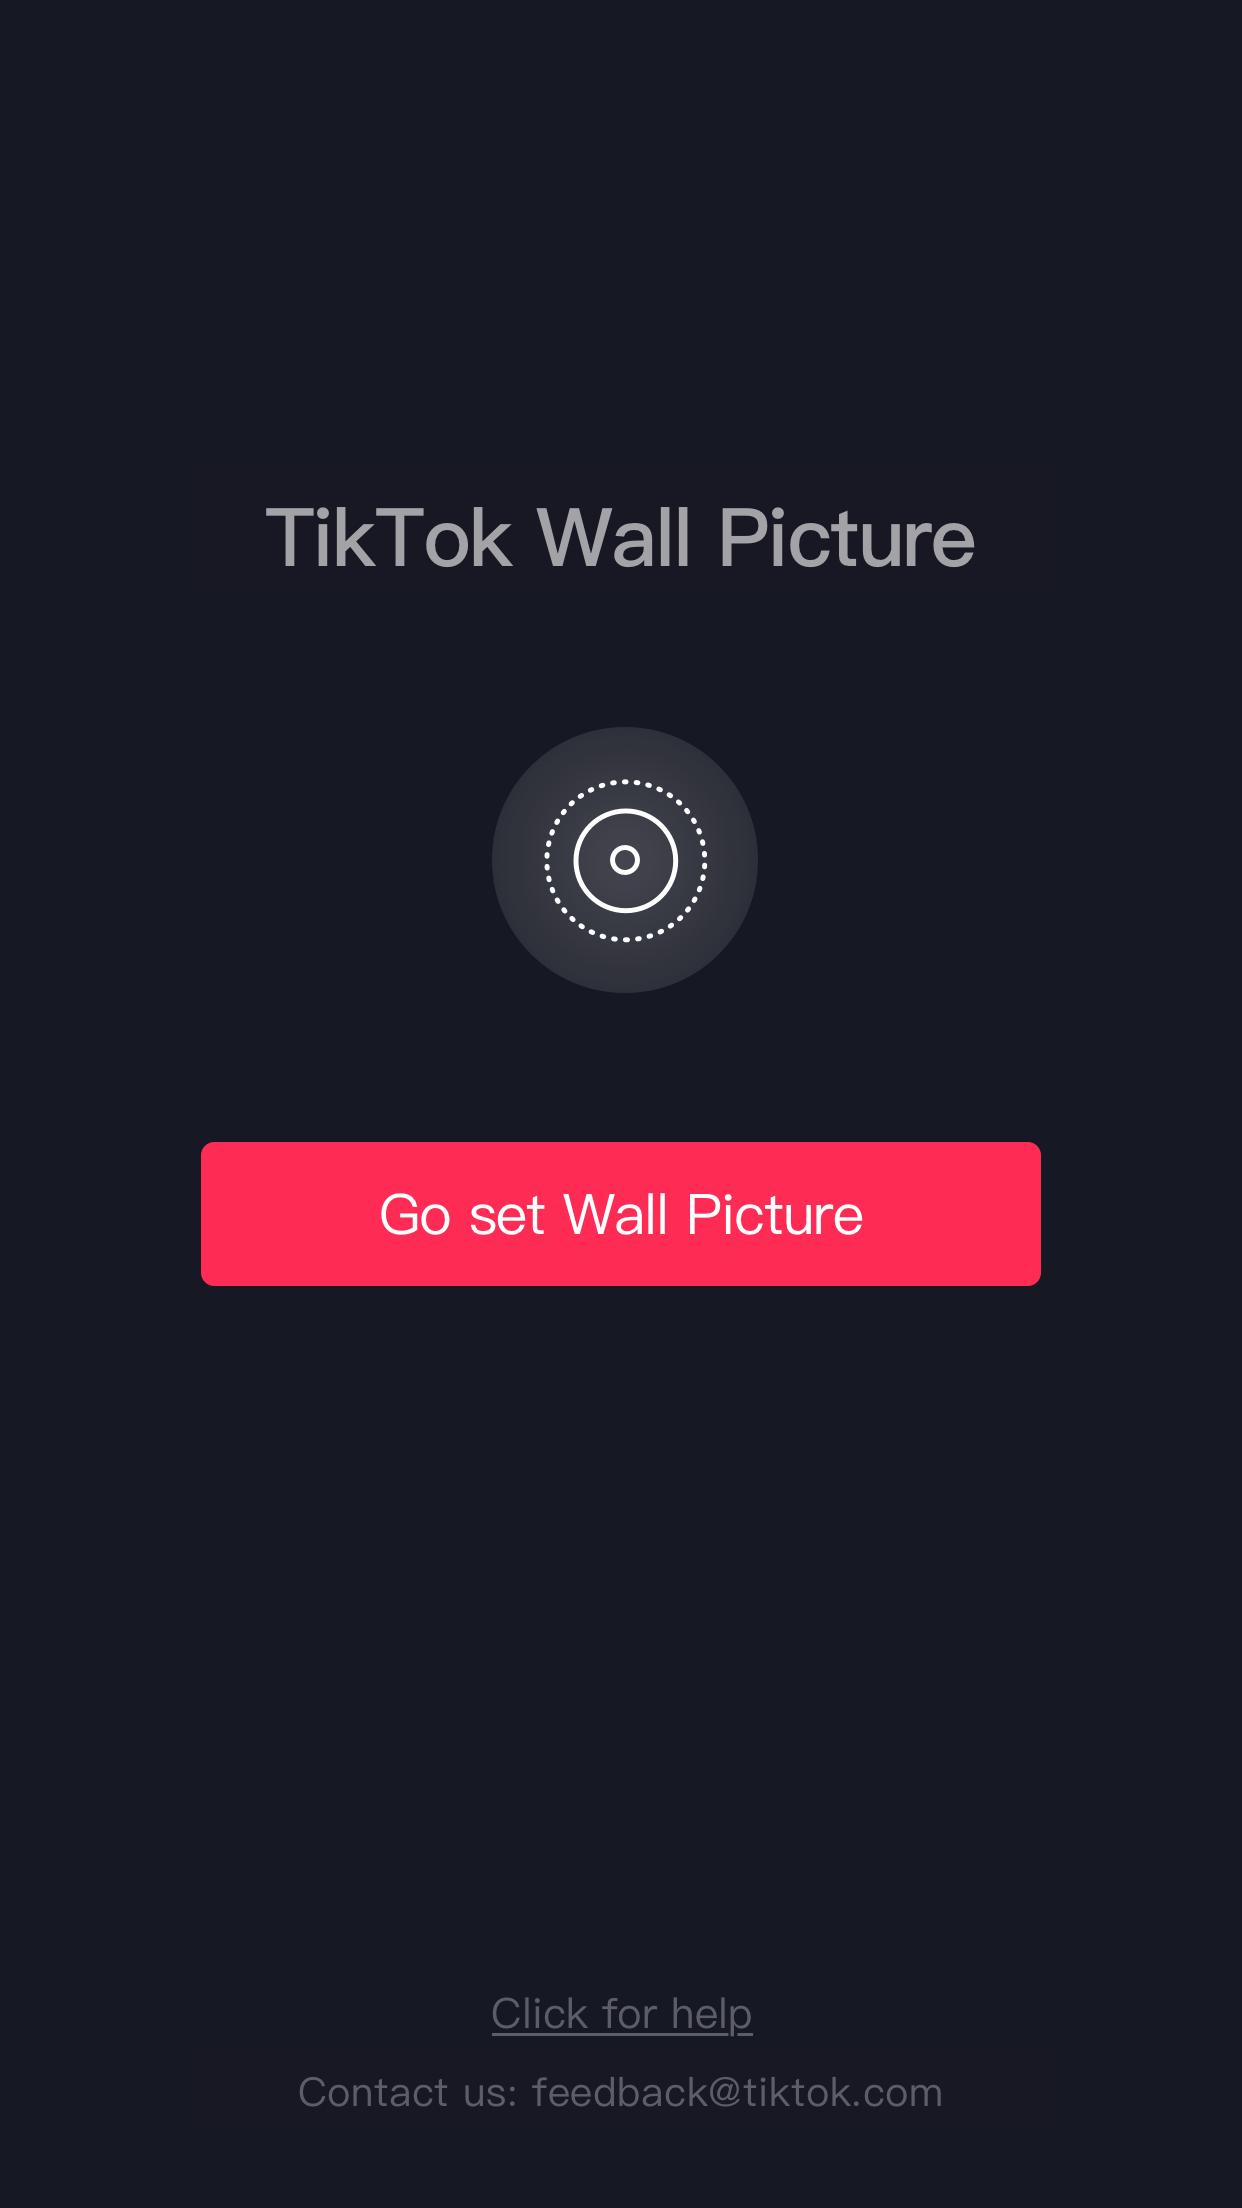 Android 用の Tiktokダイナミック壁紙 Apk をダウンロード